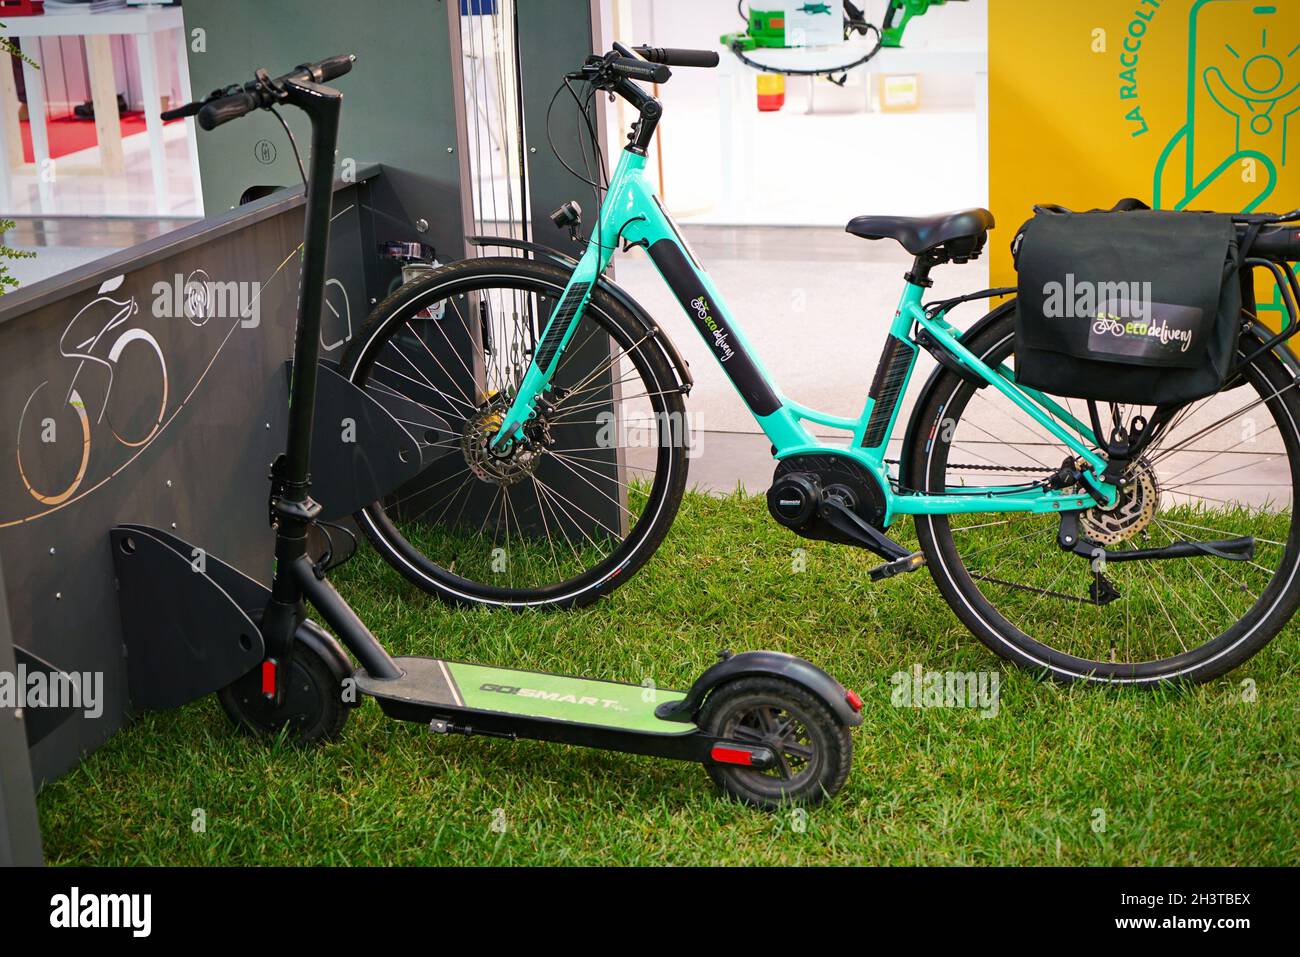 Parking pour les scooters électriques et les vélos dans les villes intelligentes.Rimini, Italie - octobre 2021 Banque D'Images